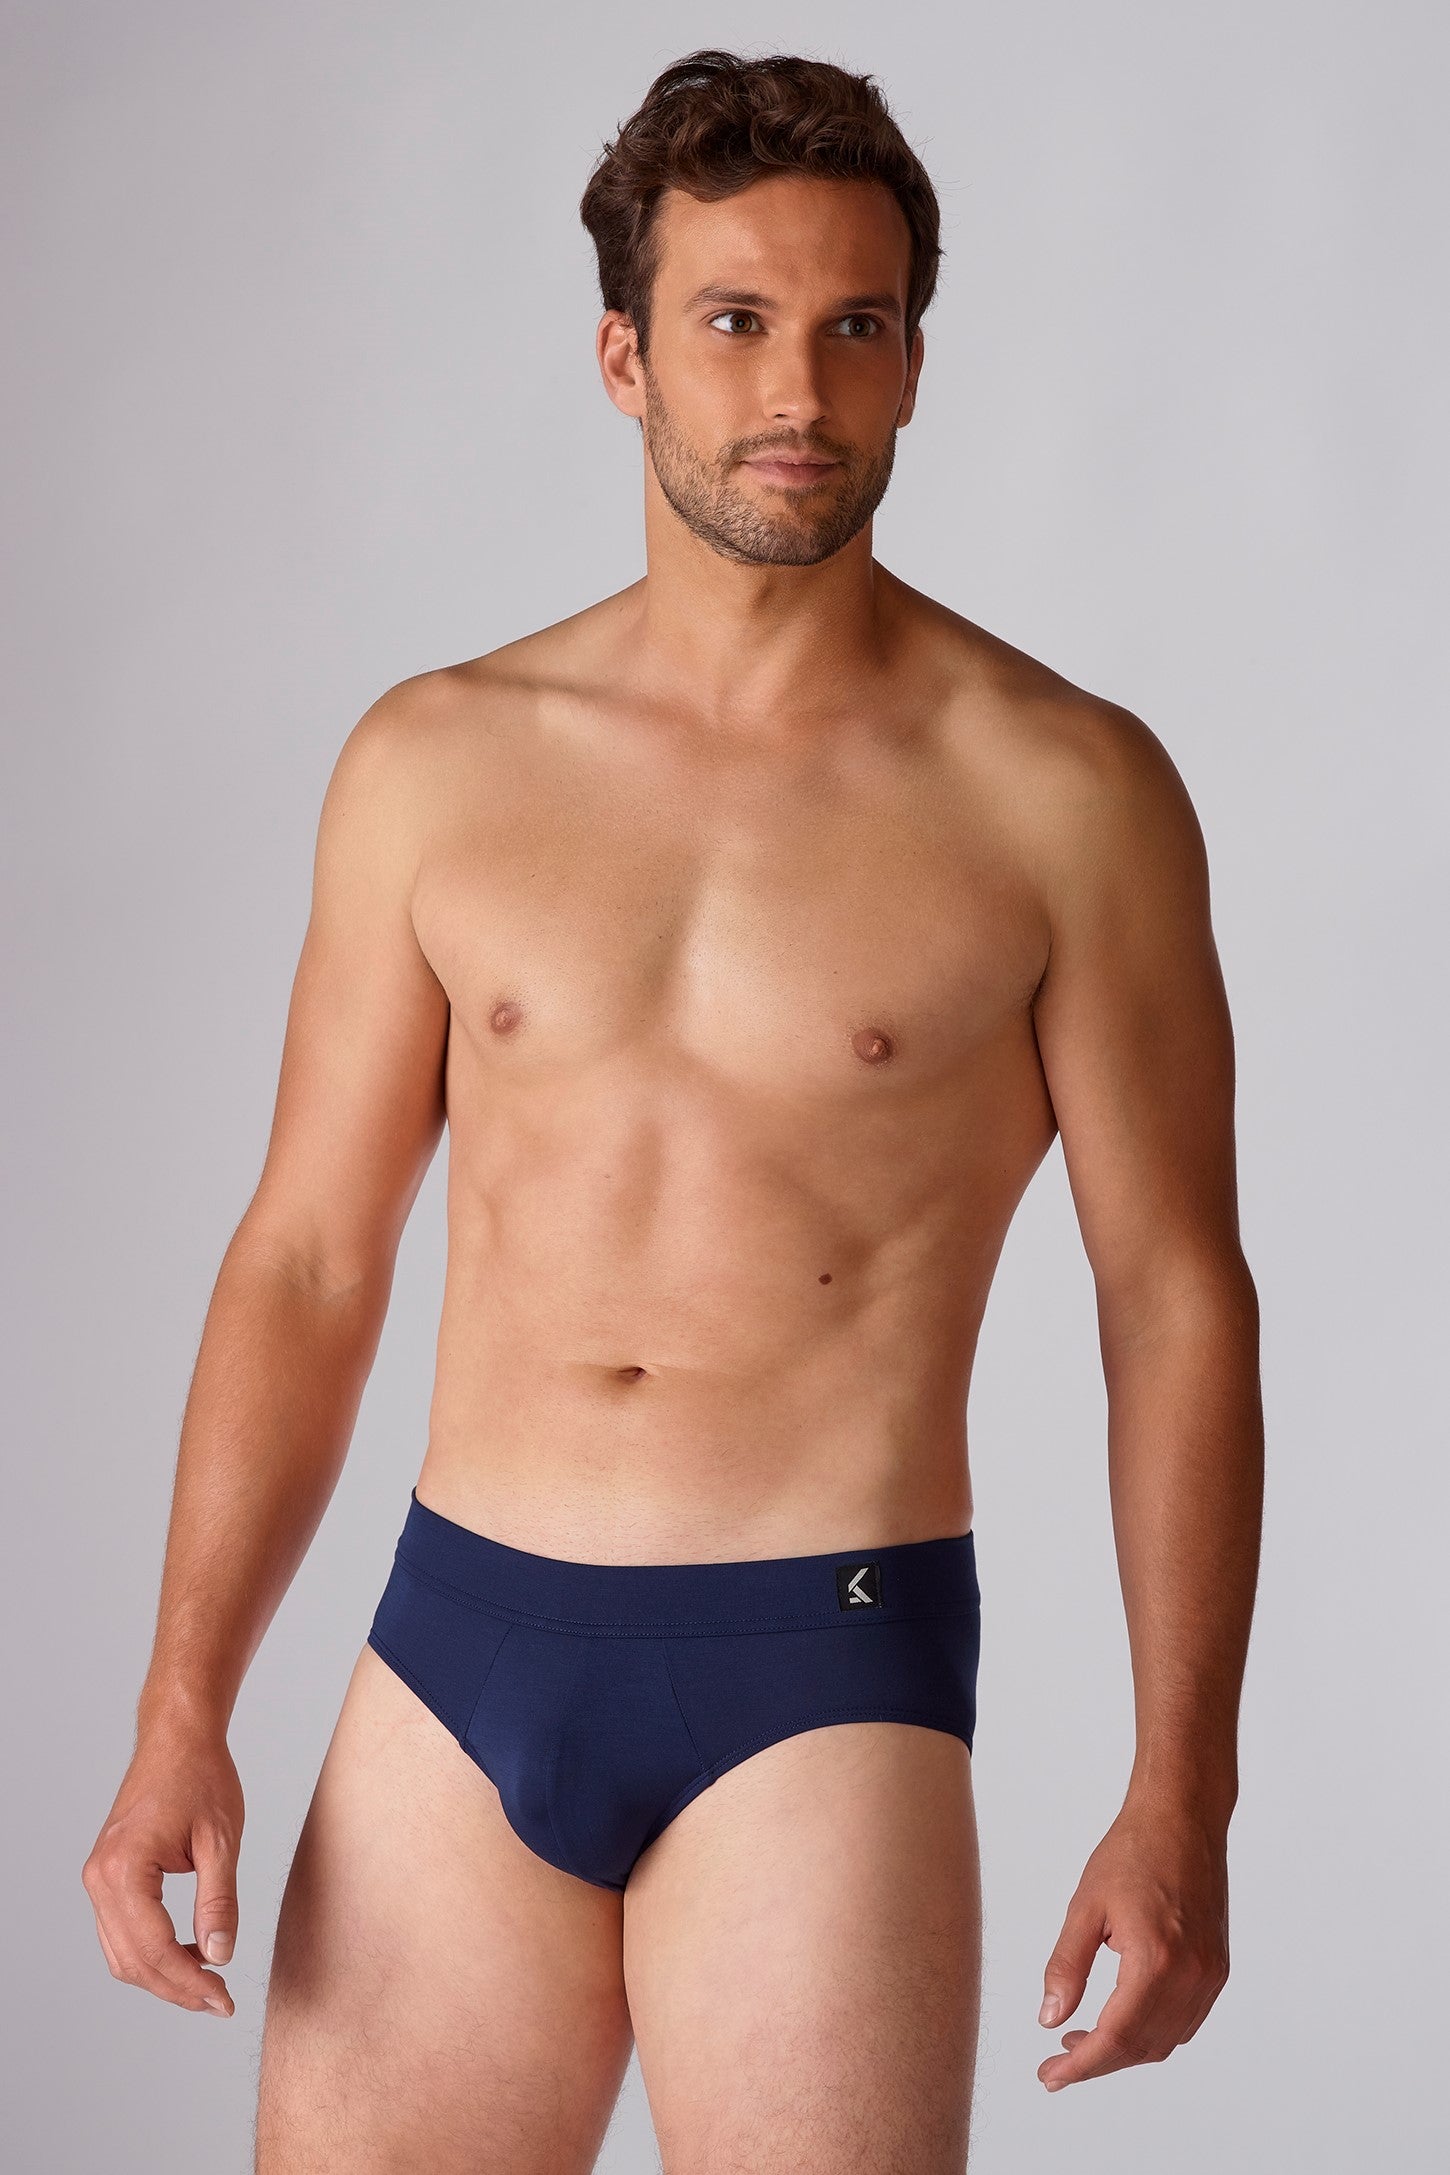 SingleLady Men's Disposable Underpants Cotton Sterile Underpants XL  [50kg-60kg] 